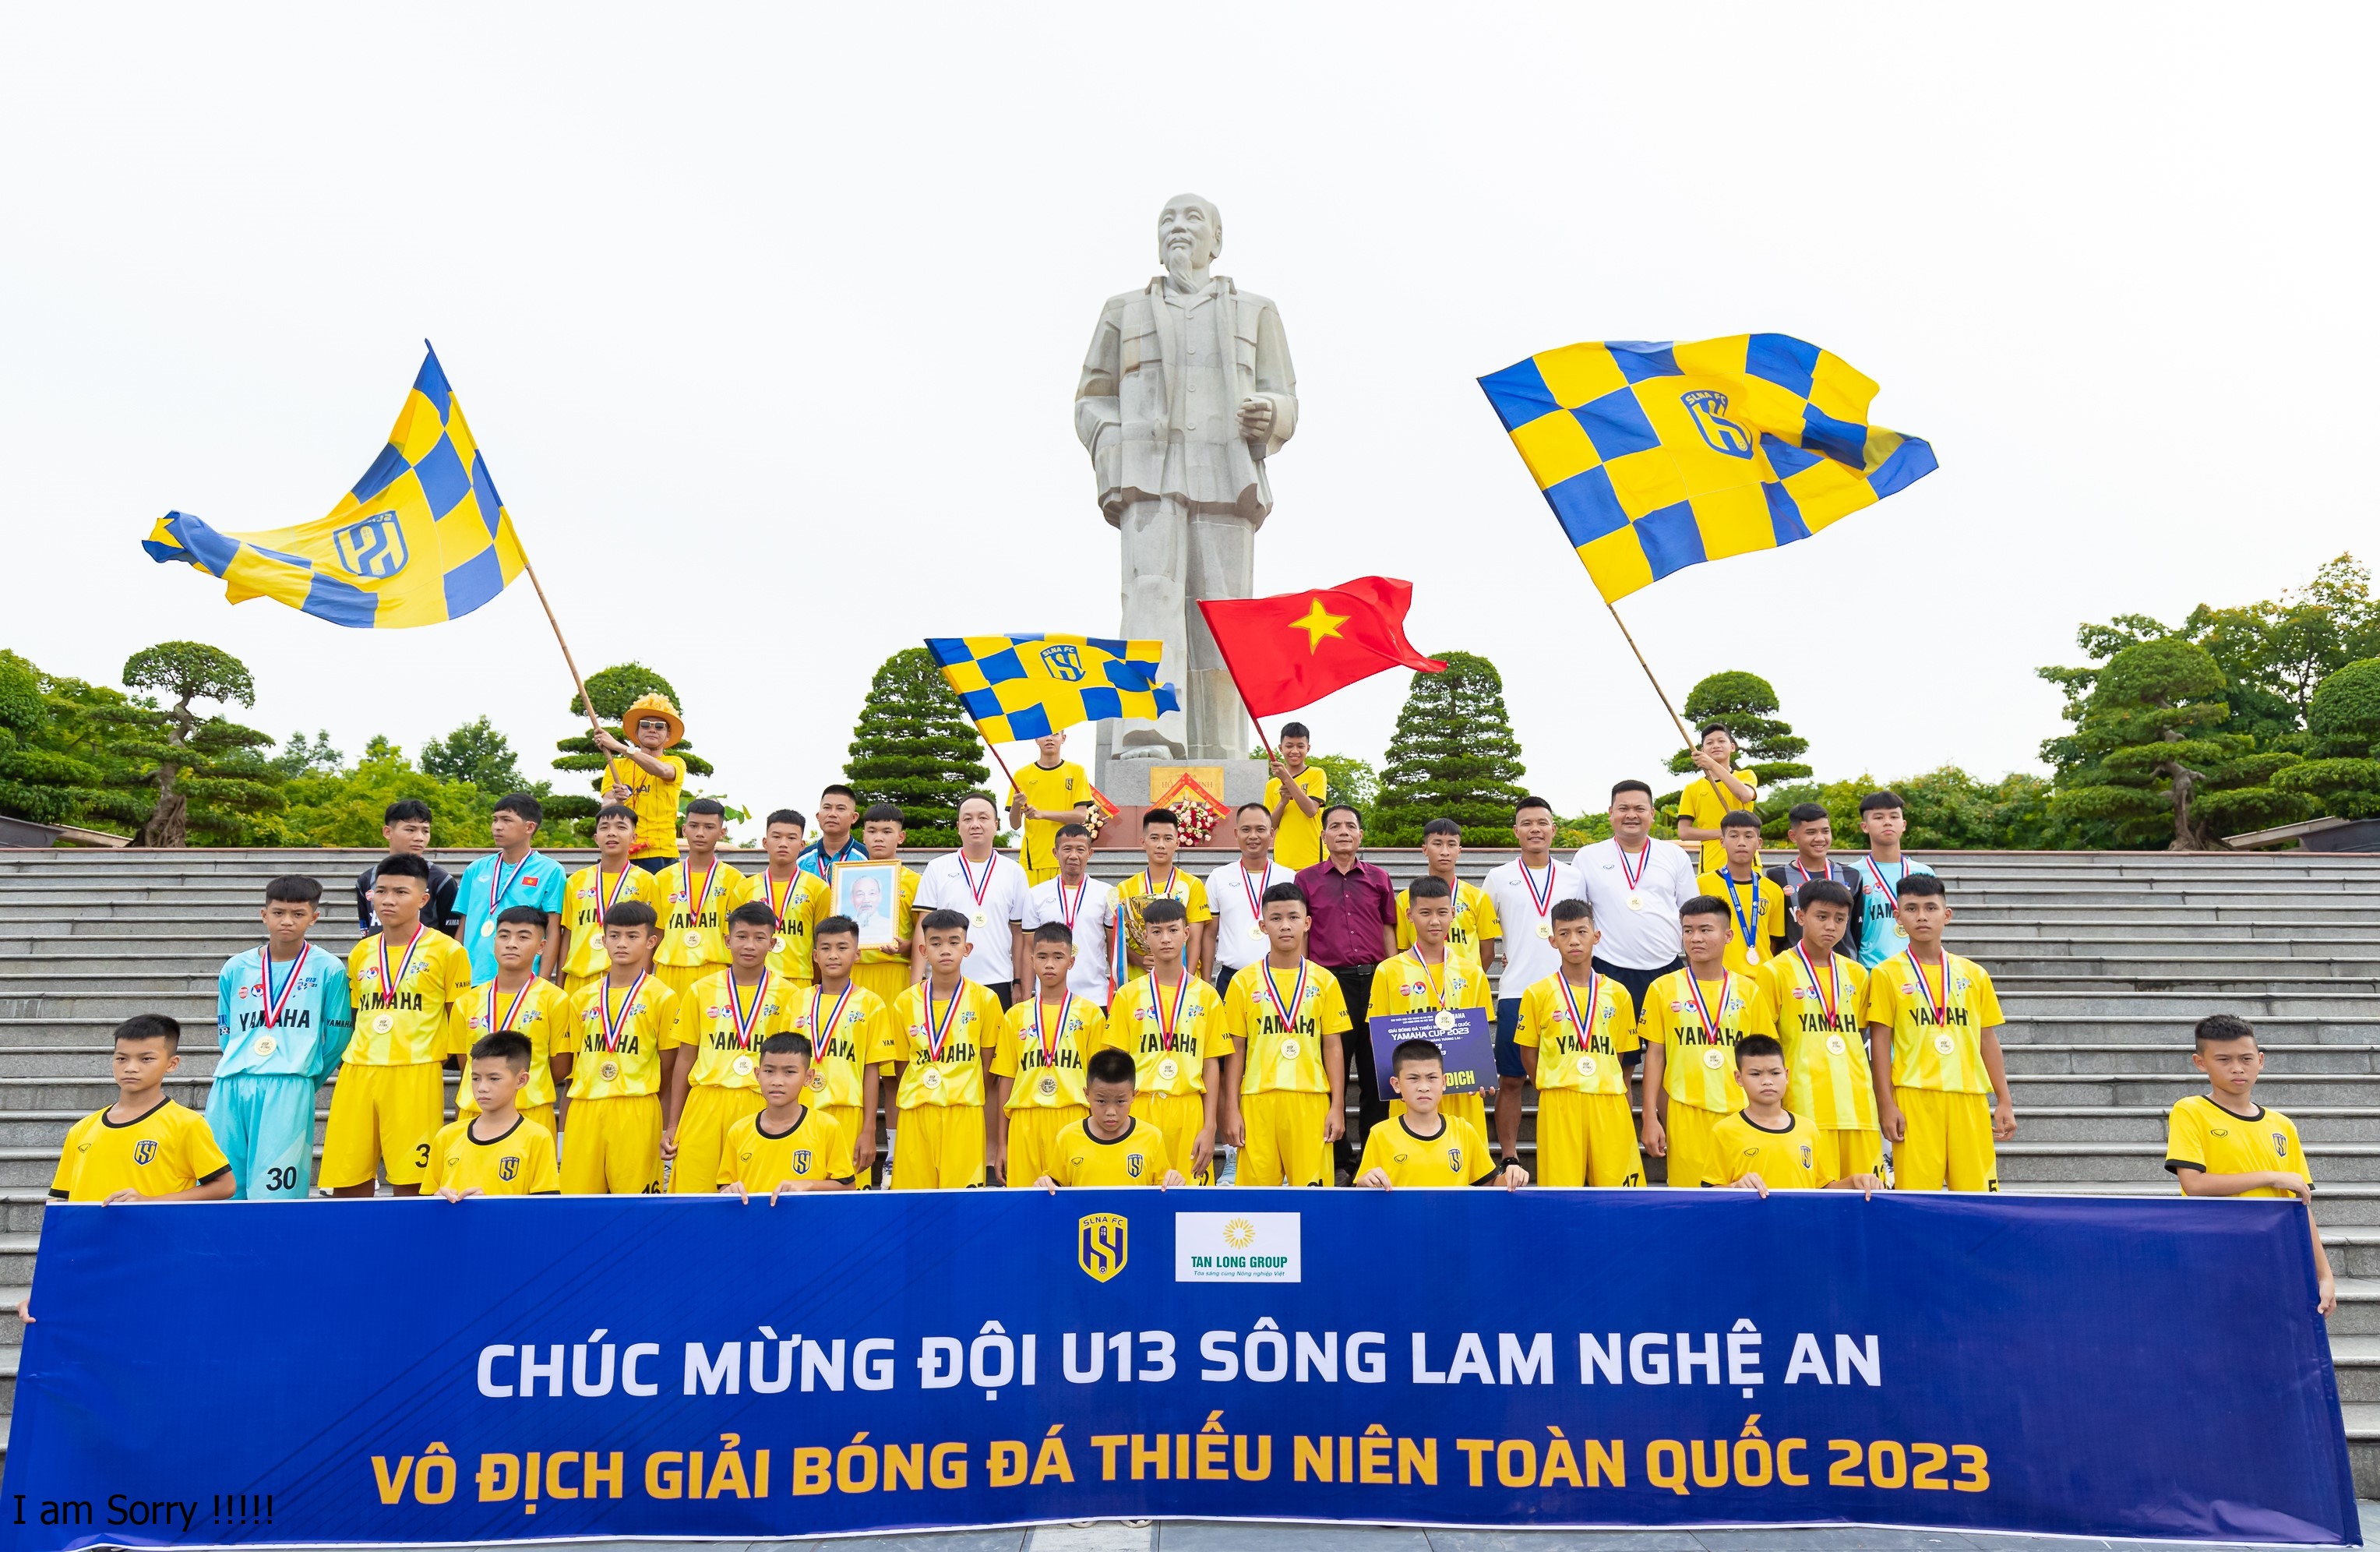 U13 Sông Lam Nghệ An đón Cúp vô địch Giải bóng đá Thiếu niên toàn quốc lần thứ 10.